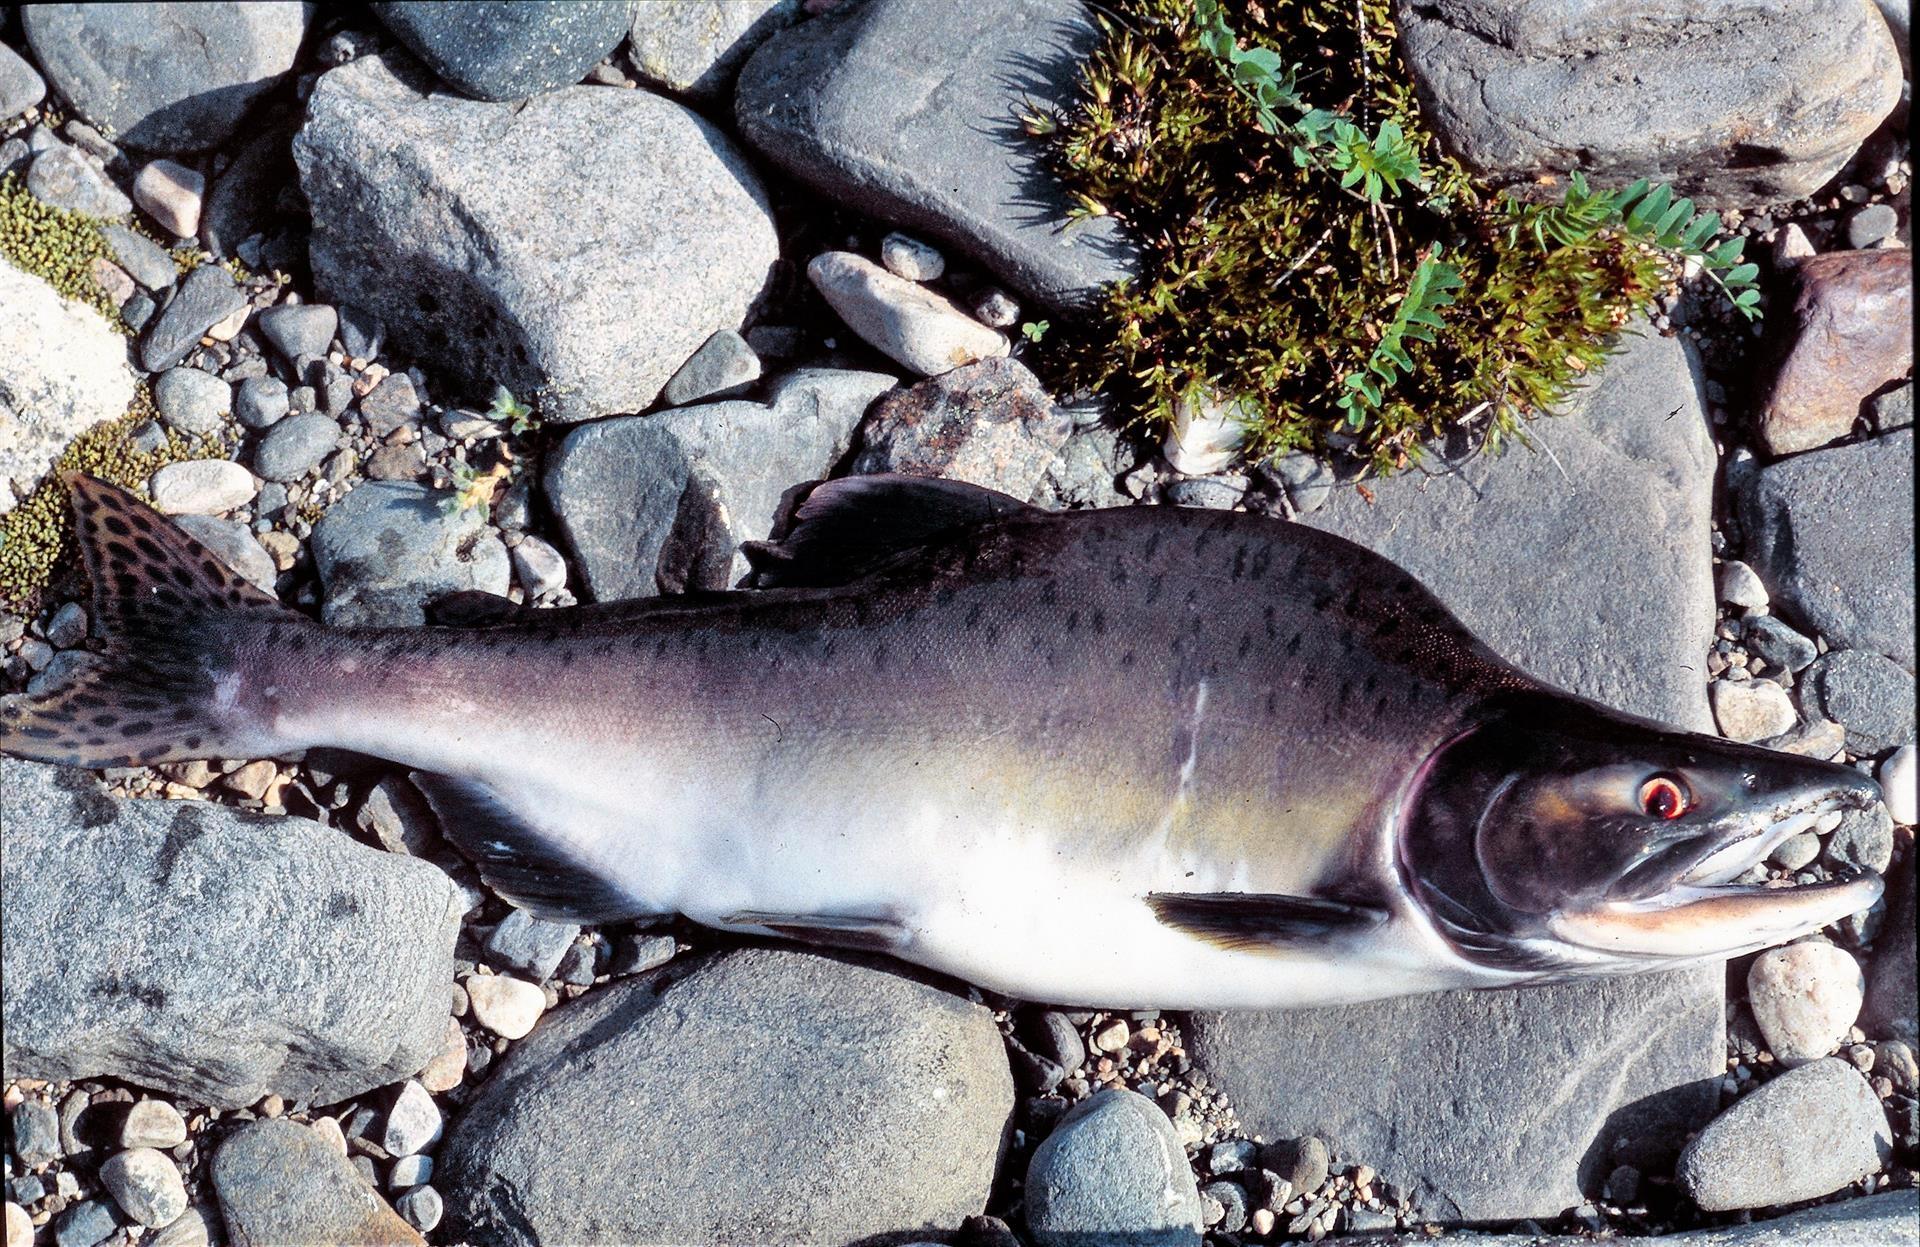 Pukkellaks har svømt opp i svært mange norske vassdrag og kan utkonkurrere norsk laks.